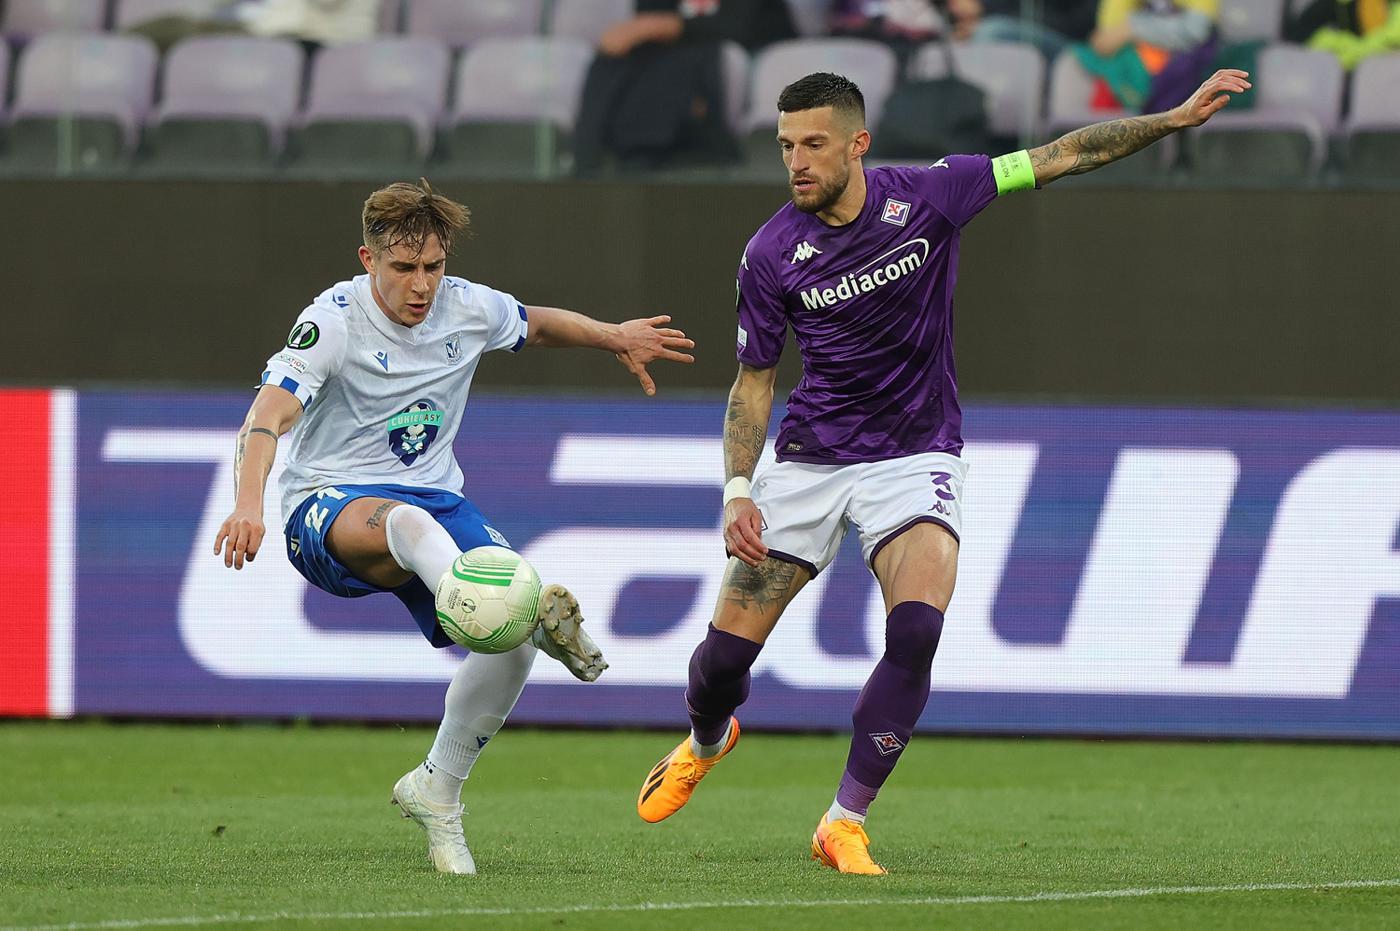 Fiorentina v Lech - 2:3. Conference League. Przegląd meczu, statystyki.